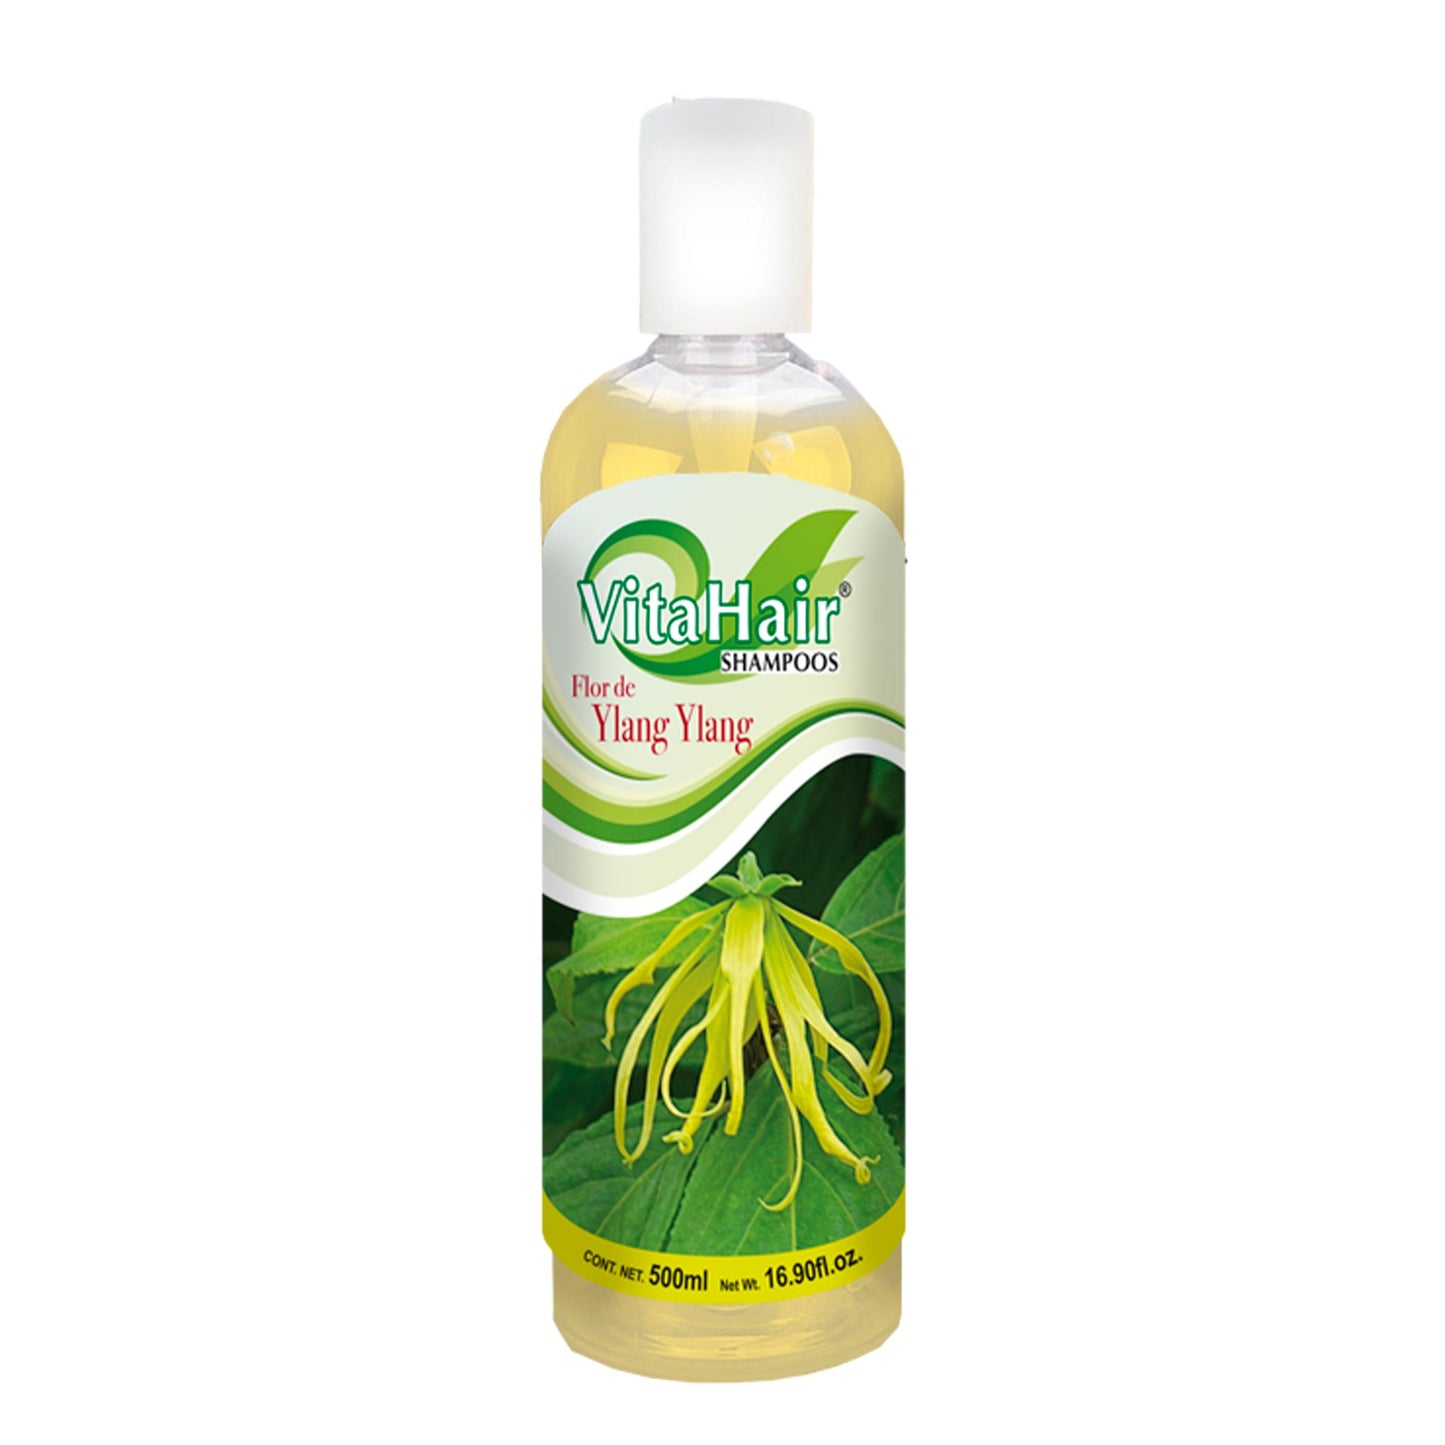 VITAHAIR ® shampoo ylang ylang 500ml